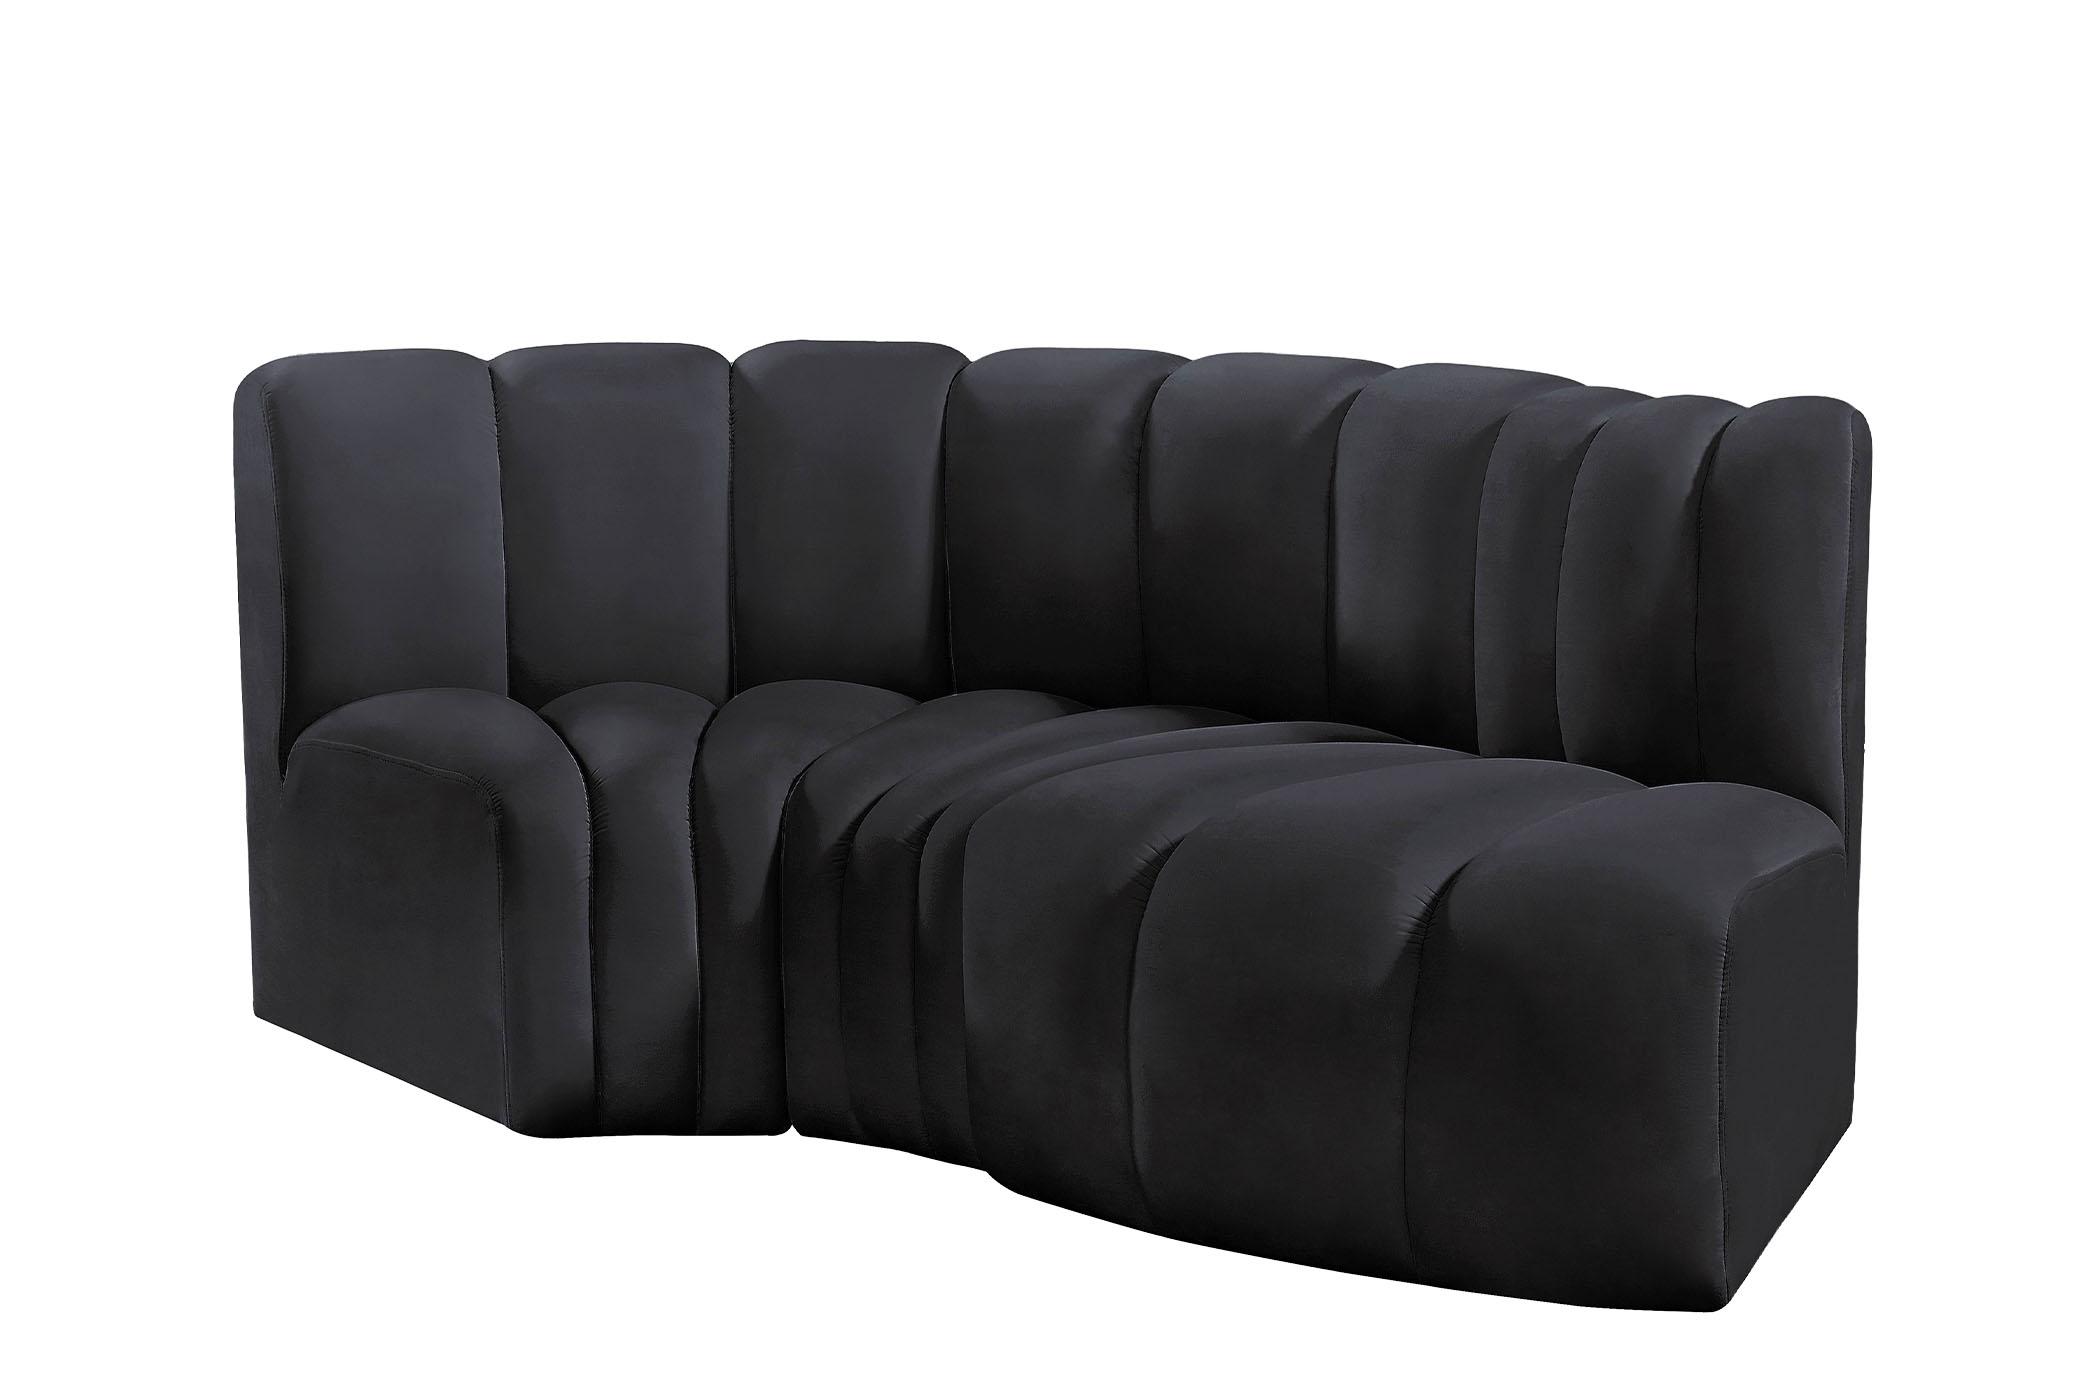 

    
103Black-S3D Meridian Furniture Modular Sectional Sofa
